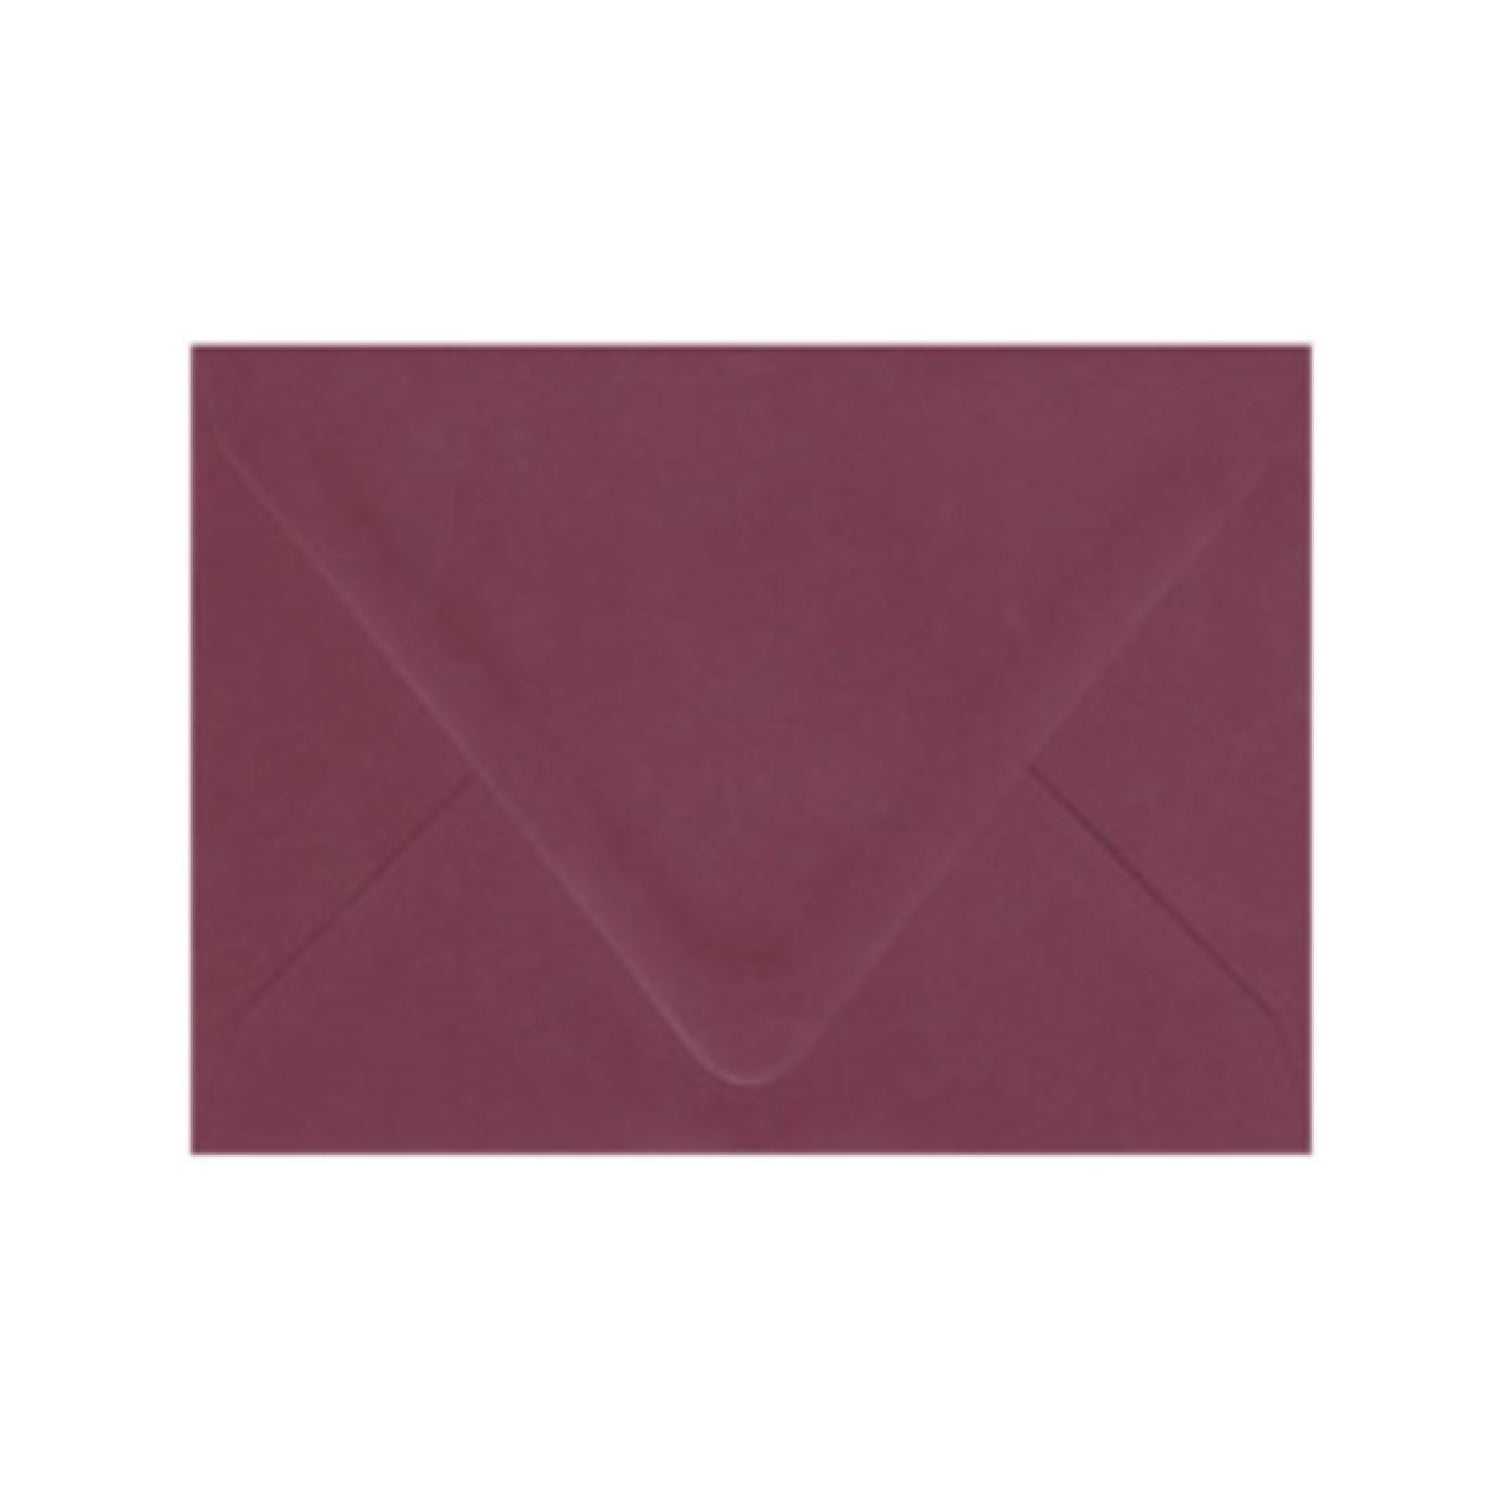 Burgundy Envelopes - Pack of 25